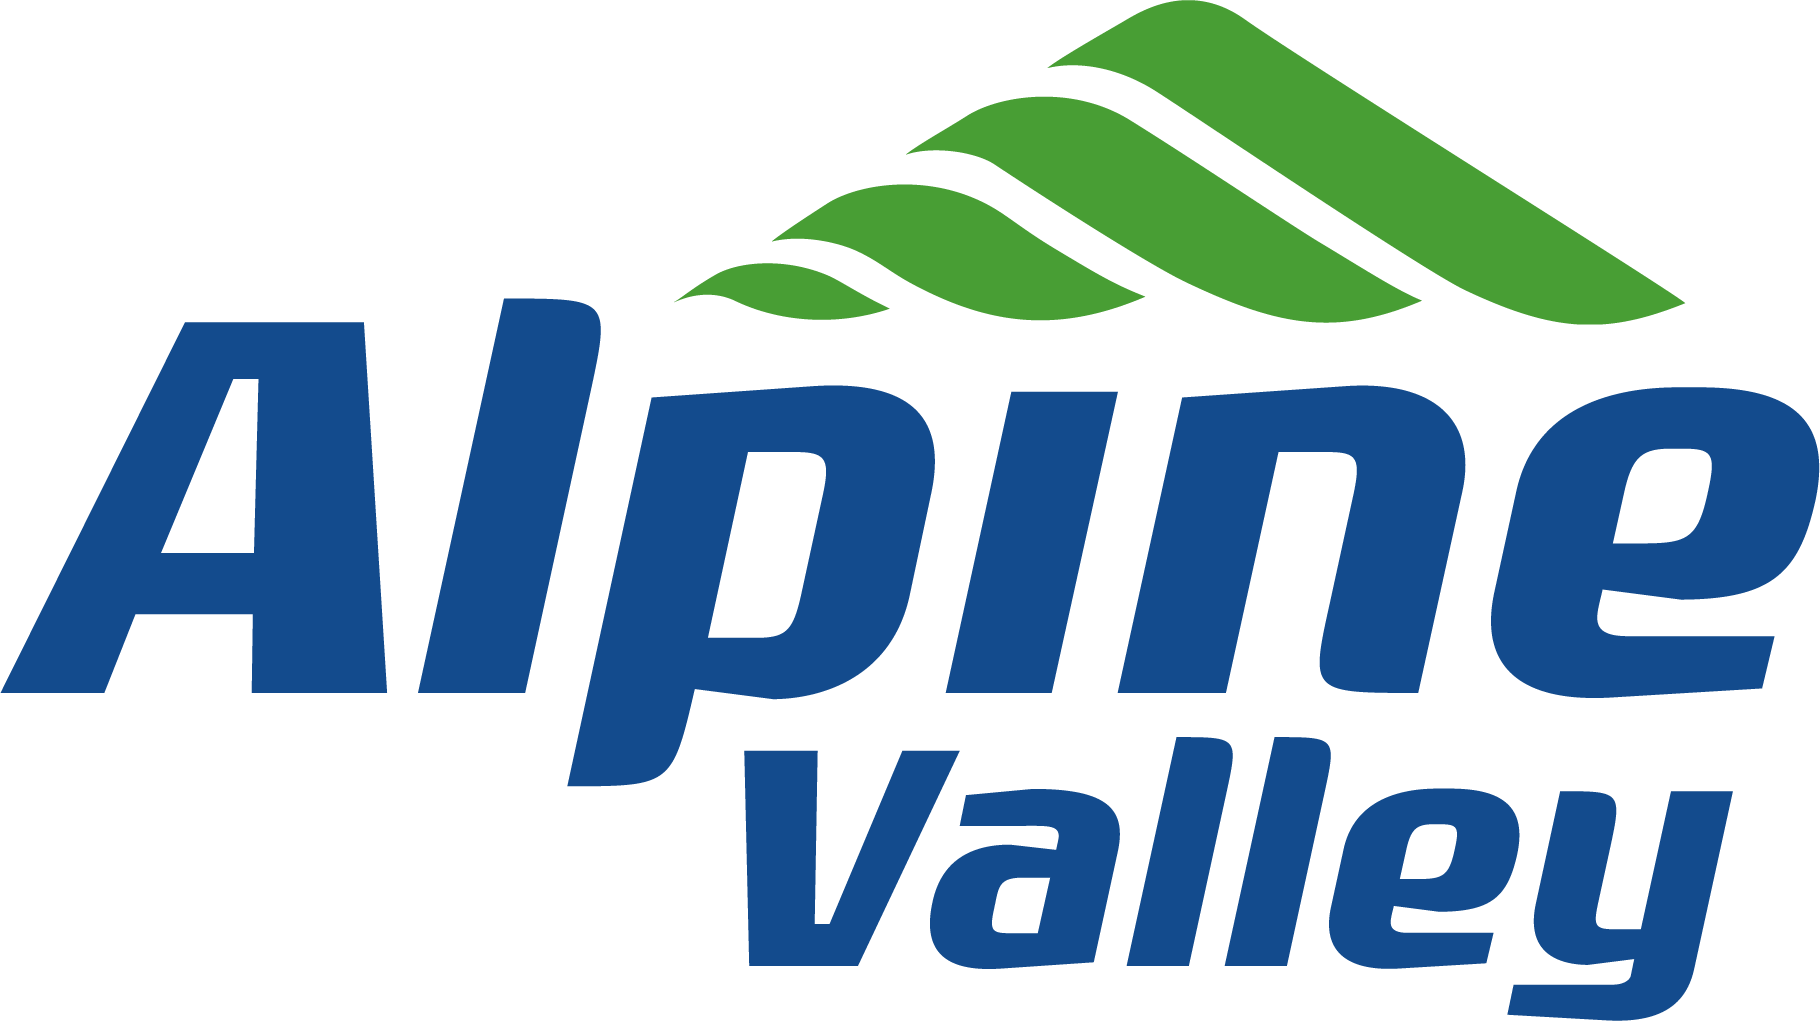 Alpine Valley Logo